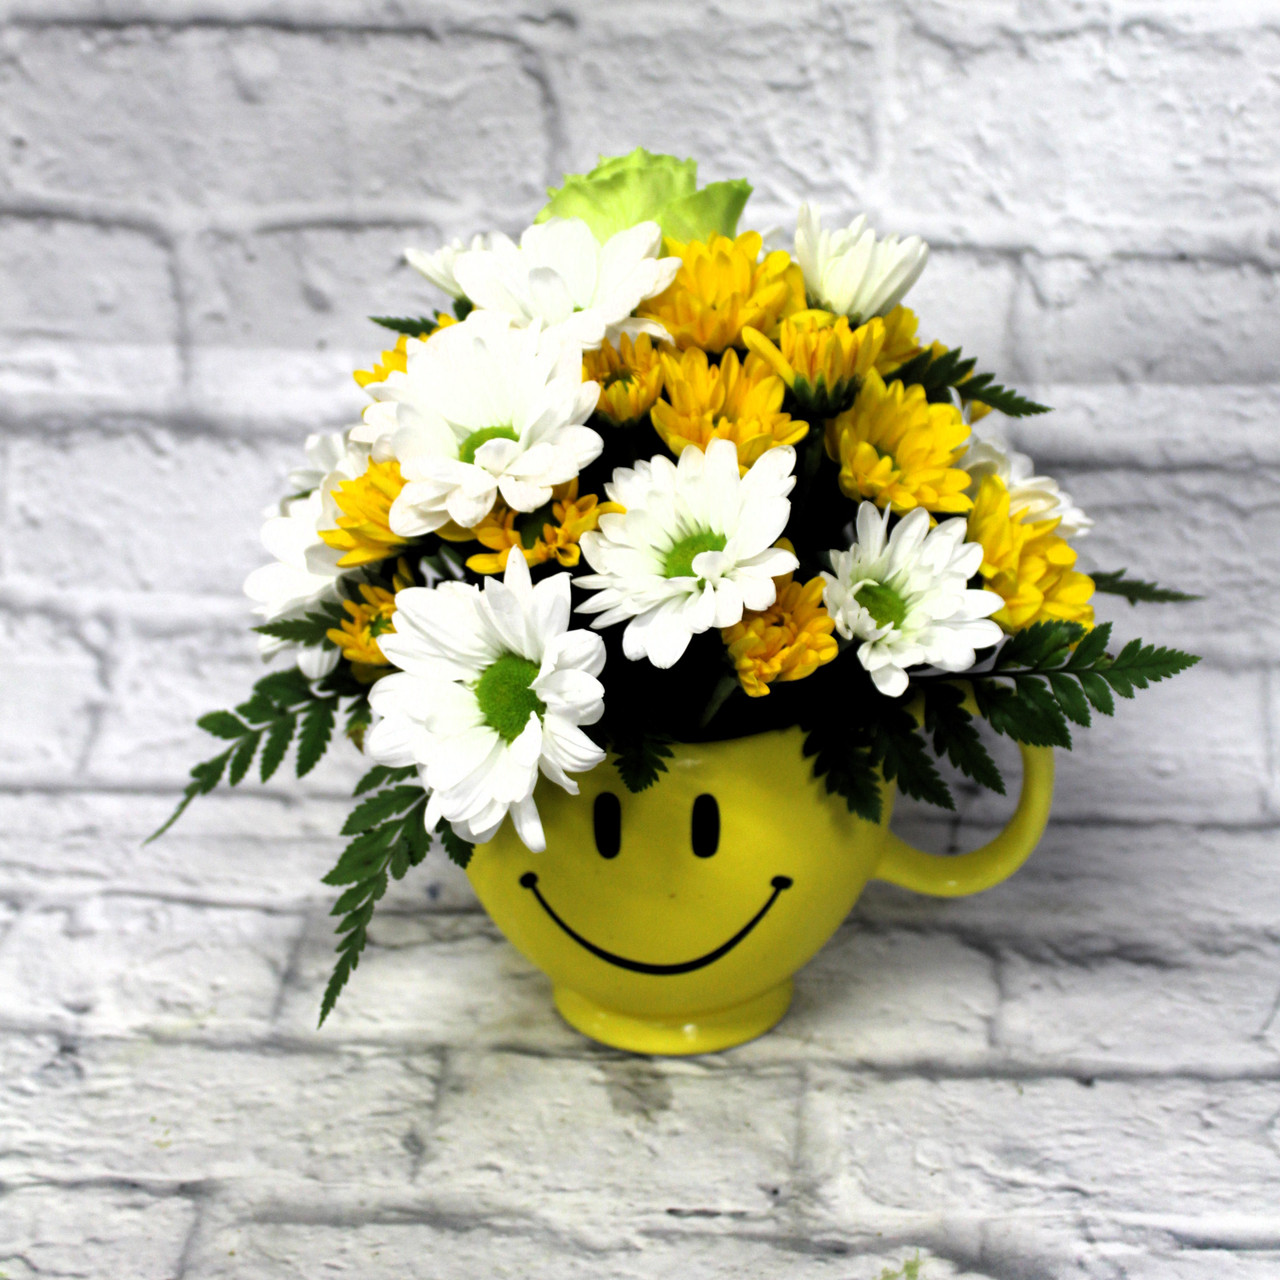 flower smiley face